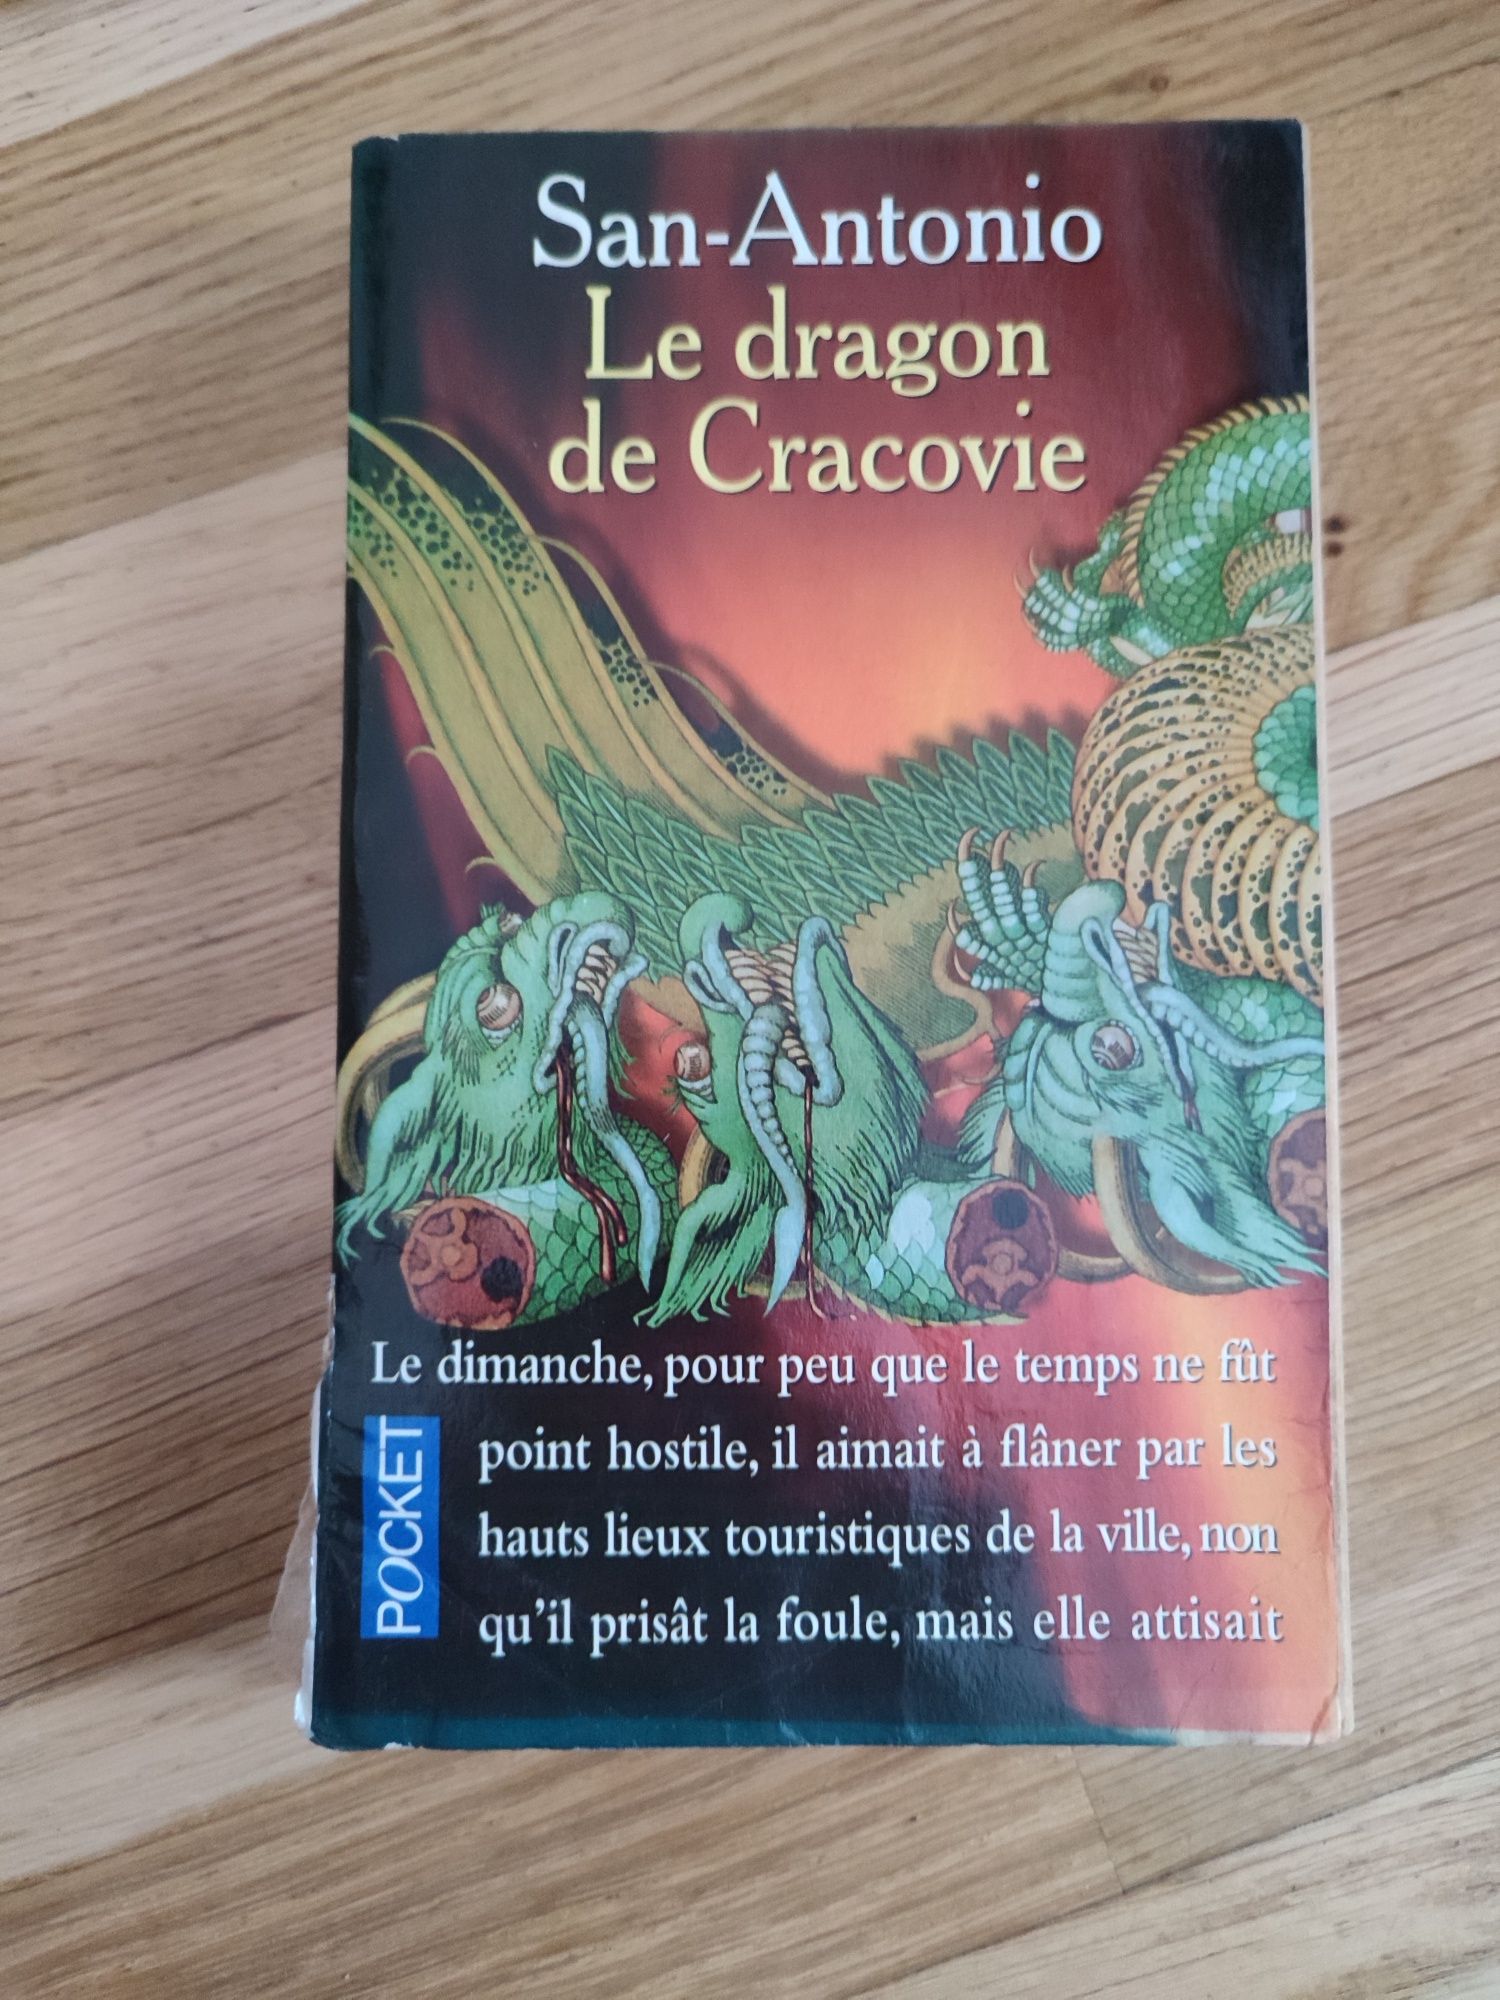 Le dragon de Cracovie - San Antonio - książka po francusku